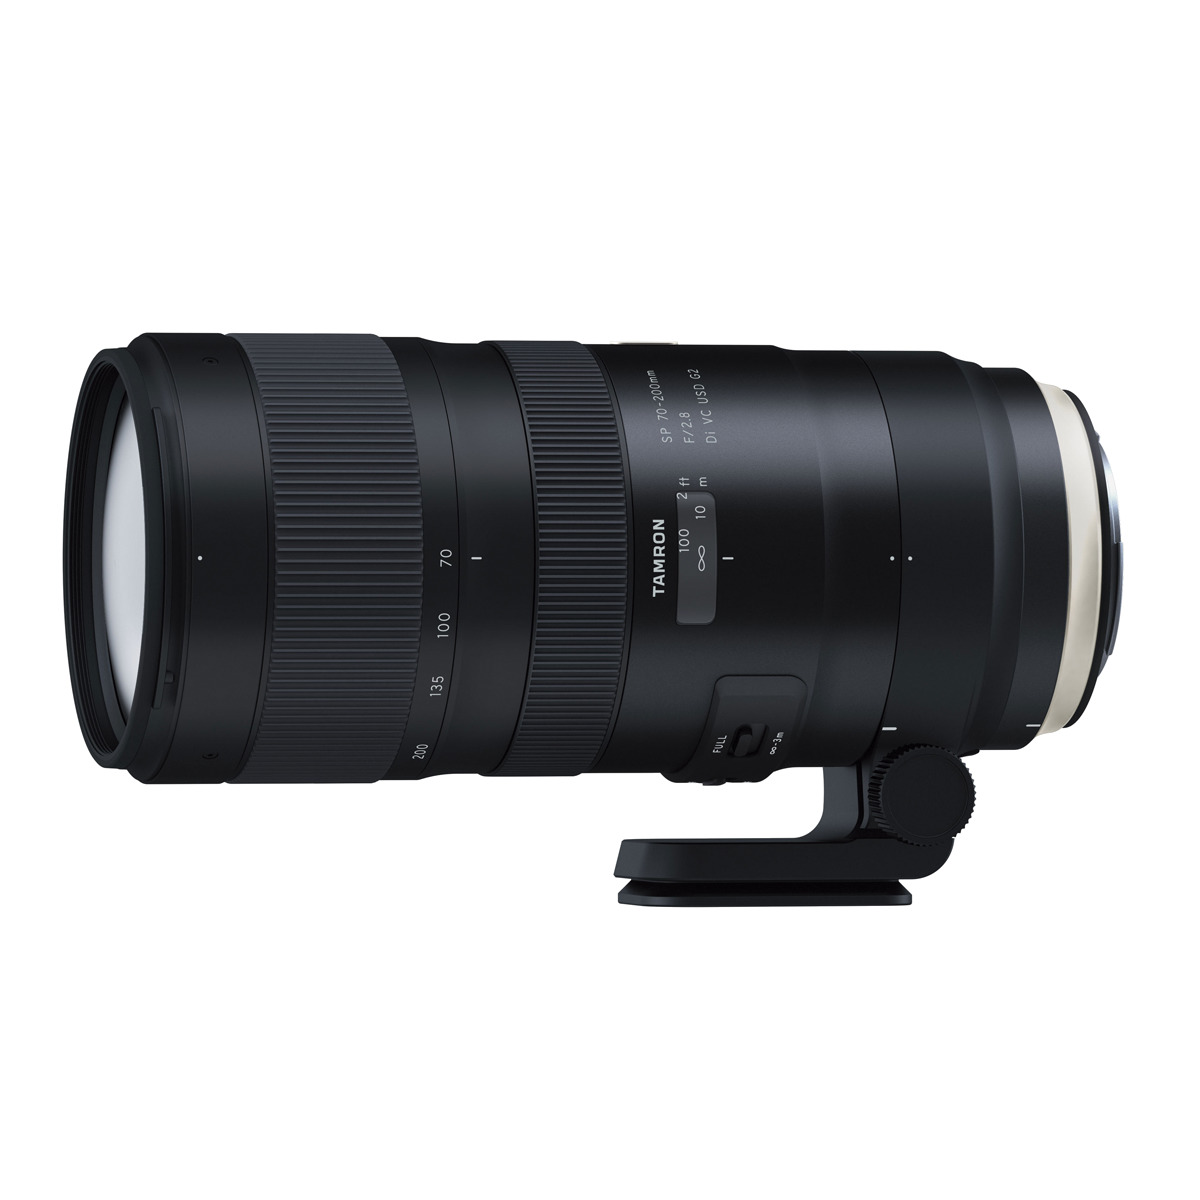 TAMRON A025E SP mm (Objektiv Di, EF-S-Mount, VC CANON G2 f/2.8 USD, - USD mm 200 70 Canon Schwarz) für 70-200MM